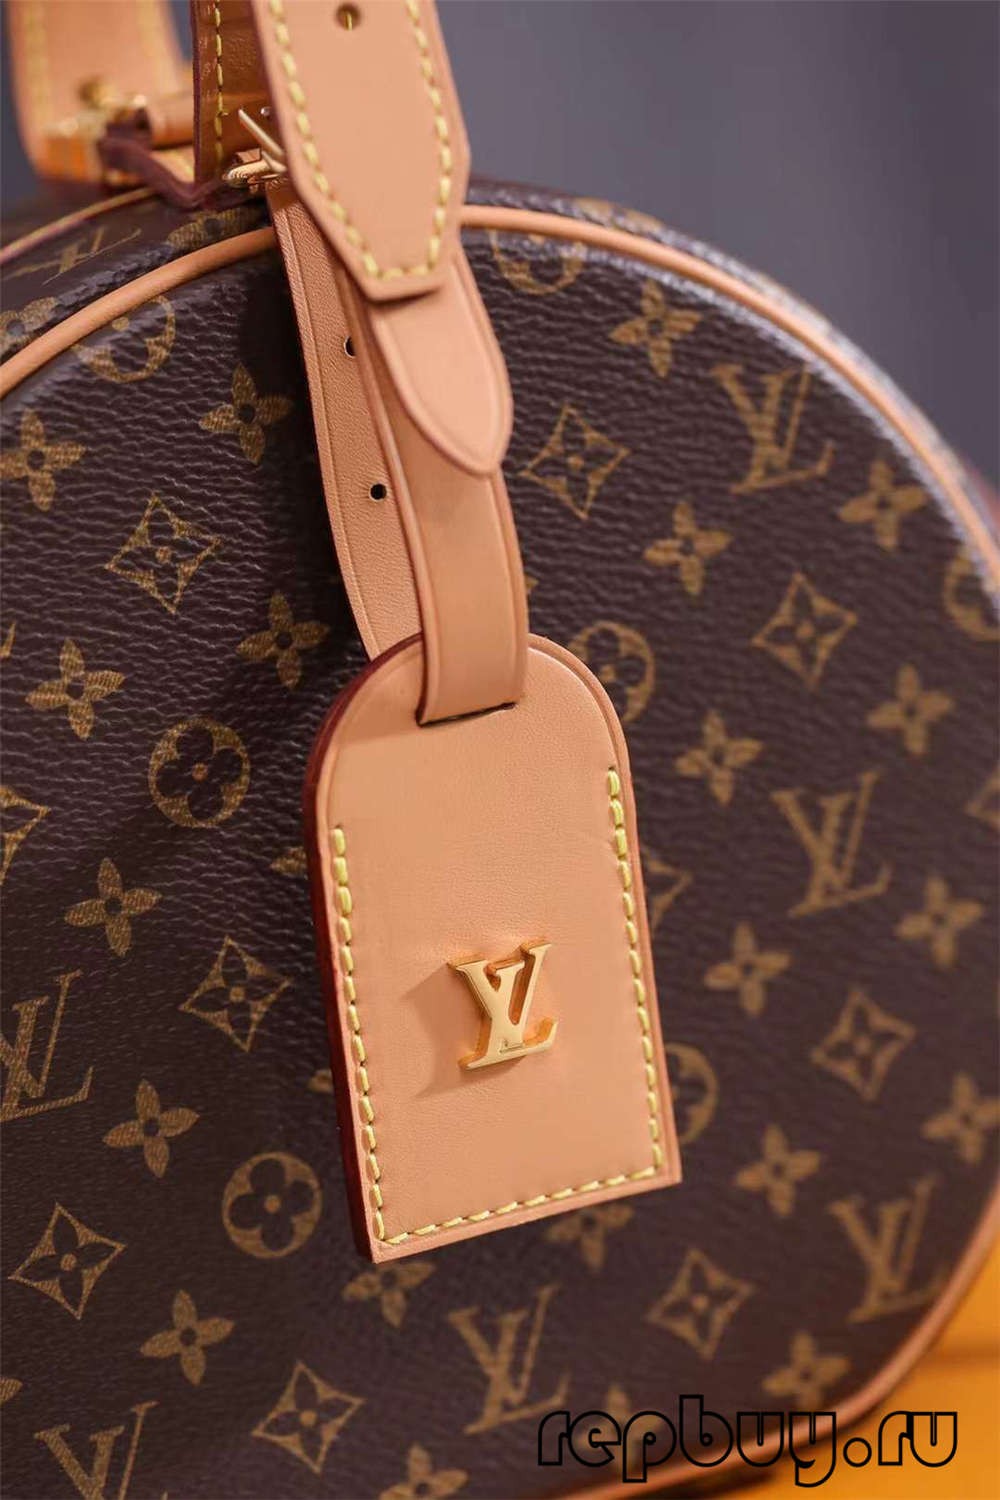 Louis Vuitton M43514 PETITE BOITE CHAPEAU กระเป๋าจำลองด้านบน 17.5 ซม. รายละเอียดฮาร์ดแวร์และงานฝีมือ (รุ่น 2022)-ร้านค้าออนไลน์กระเป๋า Louis Vuitton ปลอมคุณภาพดีที่สุด, กระเป๋าออกแบบจำลอง ru